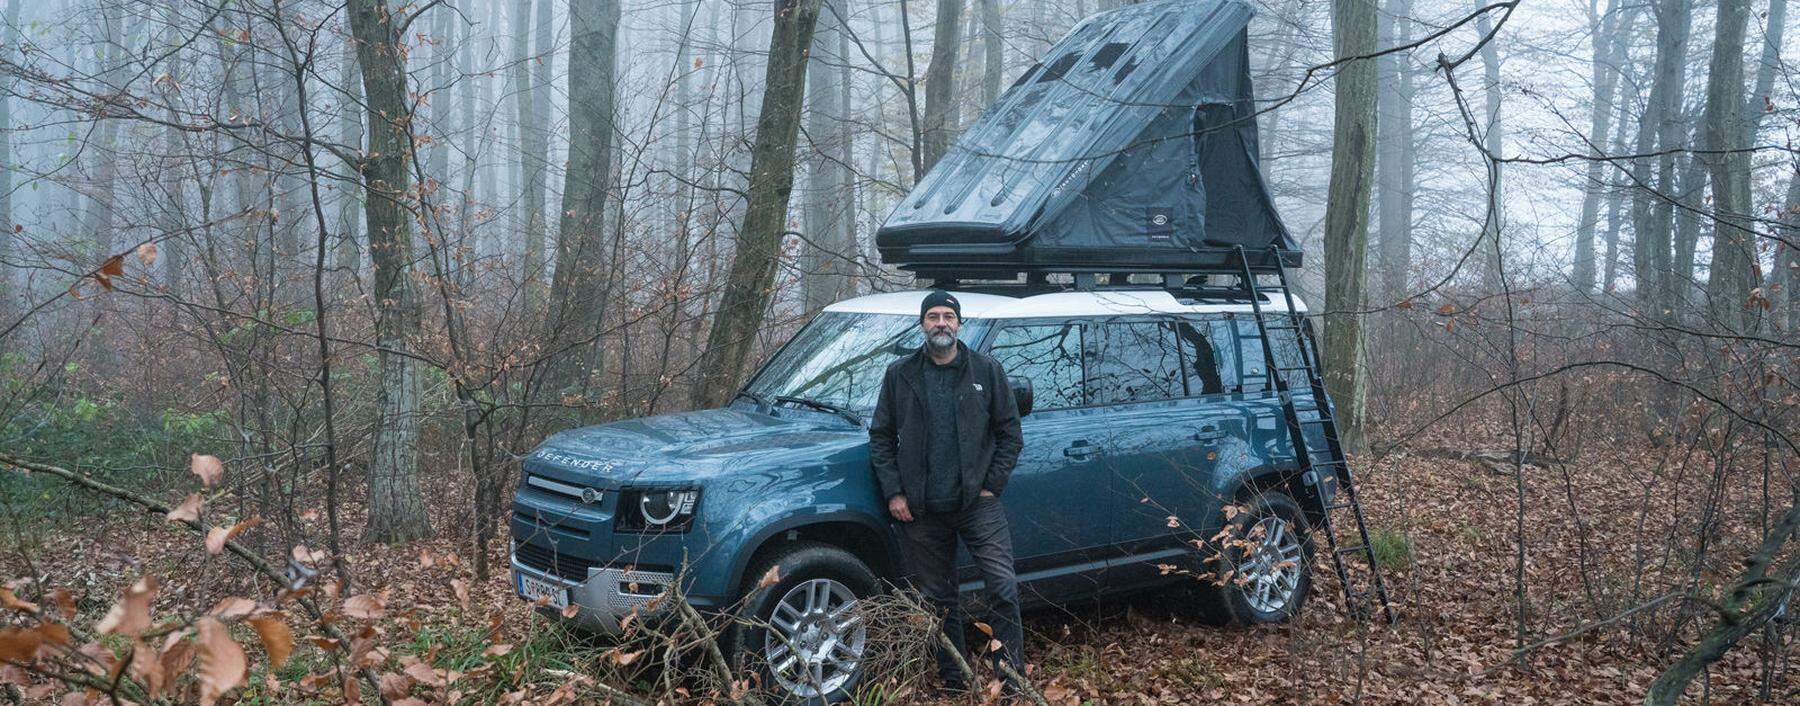 Ideal für Offroad-Touren oder eine Nacht im Wald: Der Land Rover Defender mit einem Hartschalen- Dachzelt.